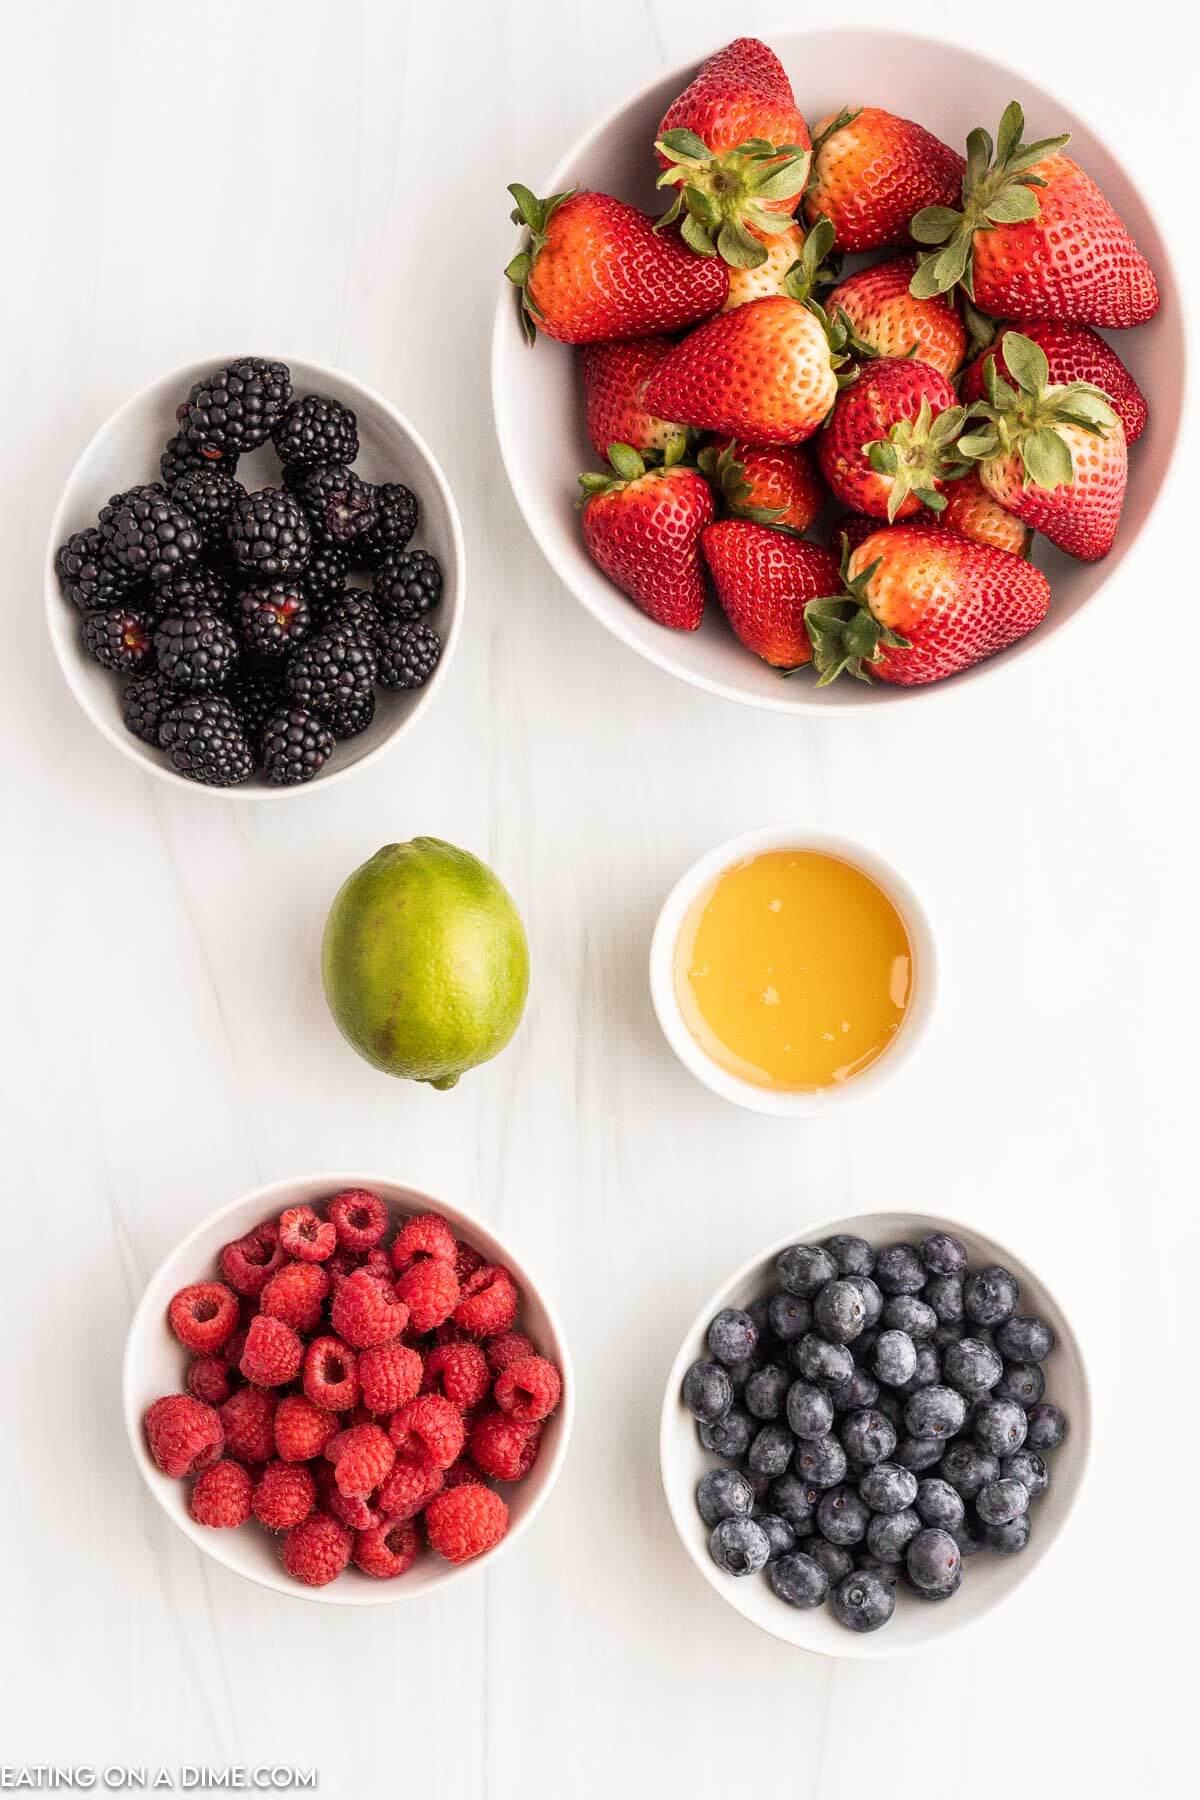 Ingredients needed - strawberries, blueberries, blackberries, raspberries, lime, honey